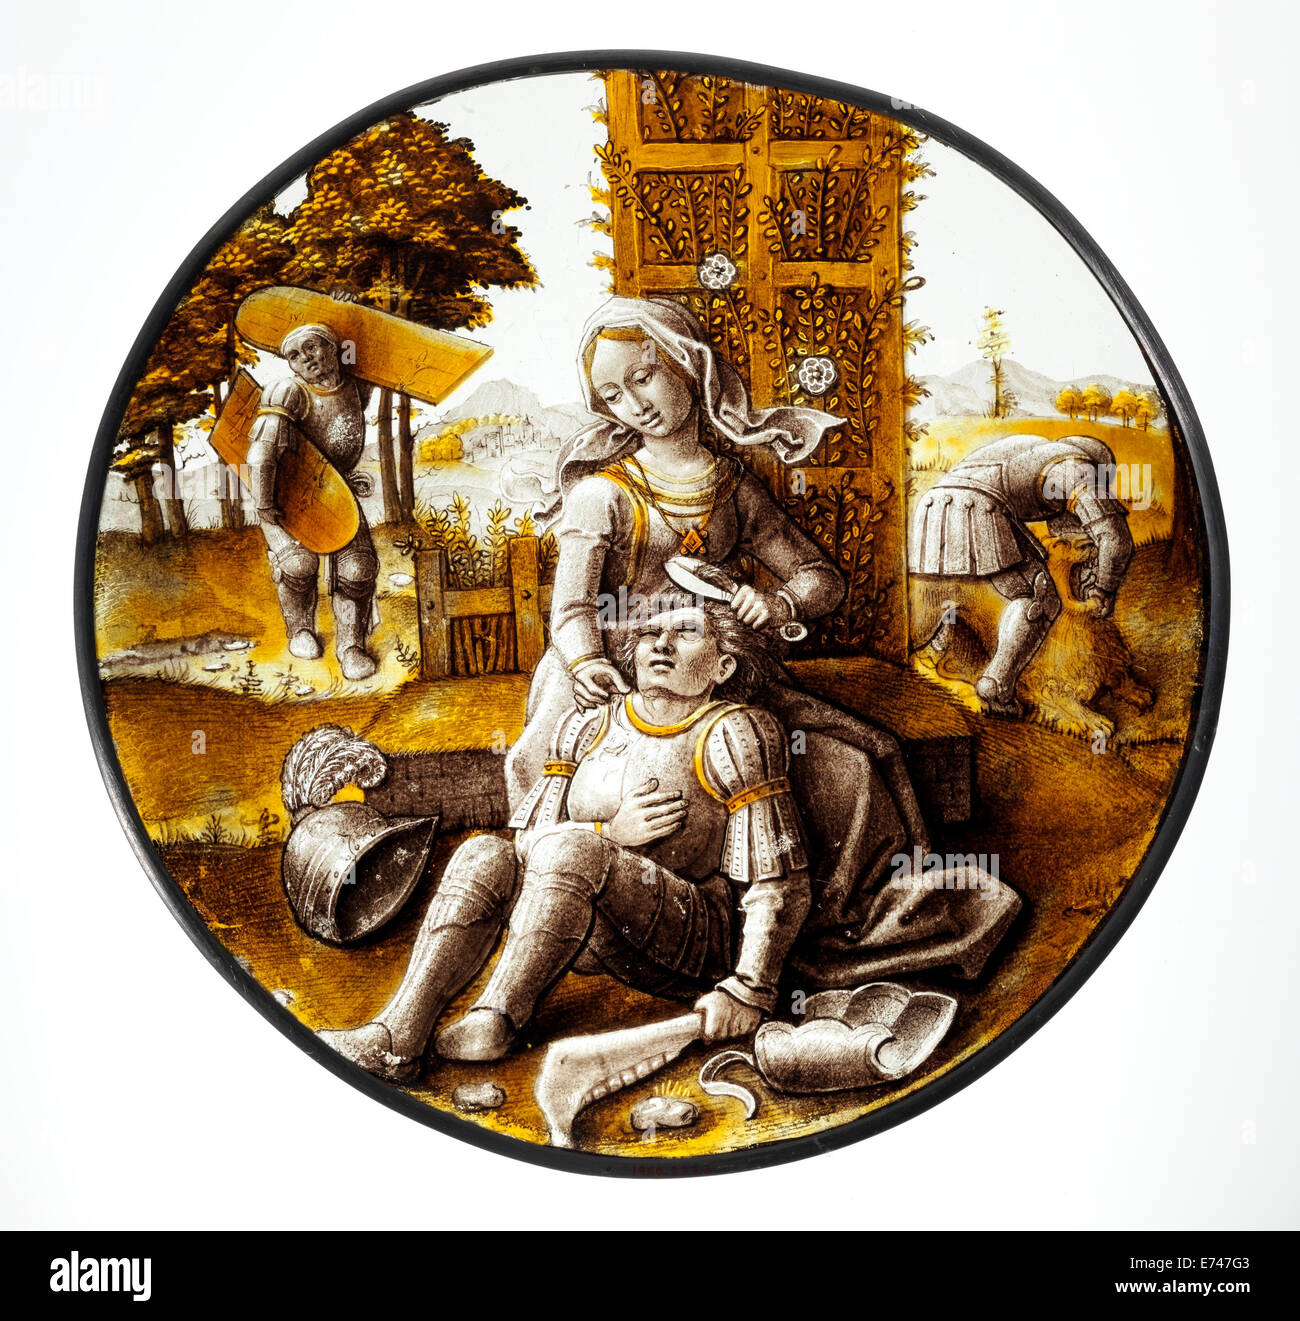 Glasmalerei-Rondell mit Delilah Schneiden der Haare von Samson, 1520 Stockfoto